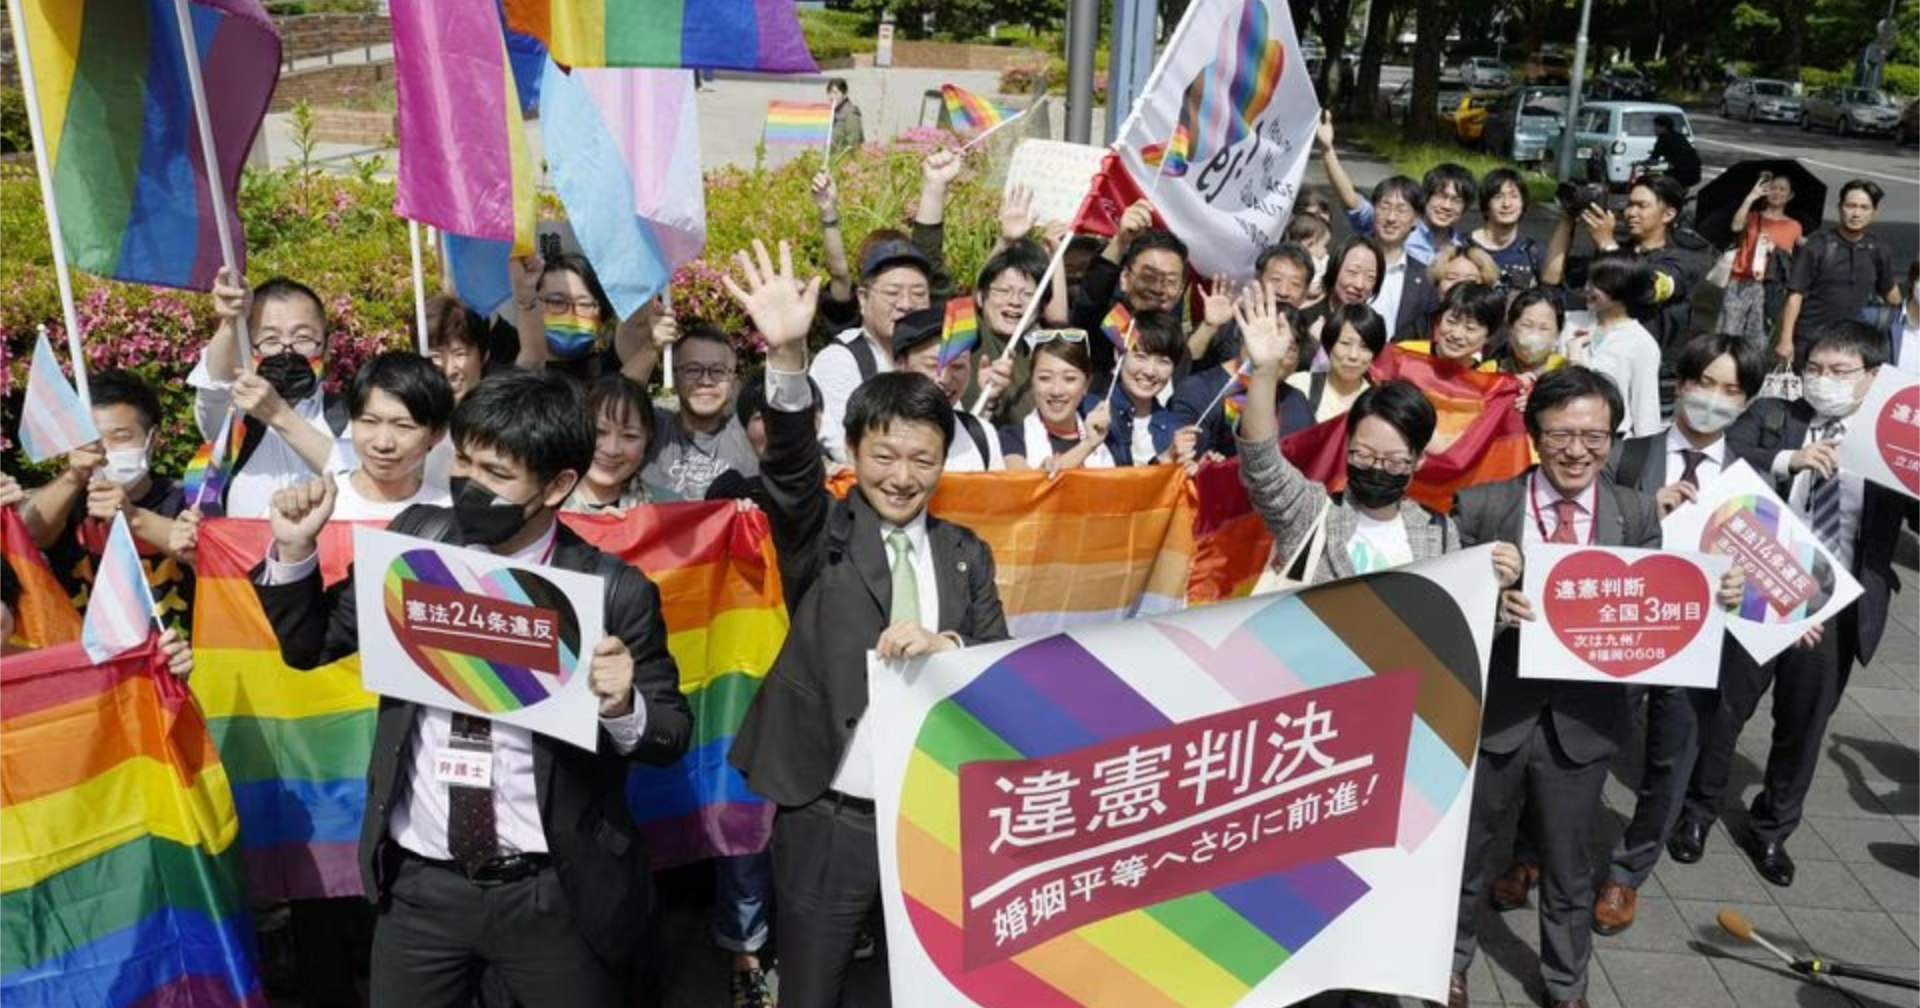 ศาลญี่ปุ่นตัดสินให้การขัดขวางสมรสเท่าเทียม เป็นการขัดต่อรัฐธรรมนูญของประเทศ